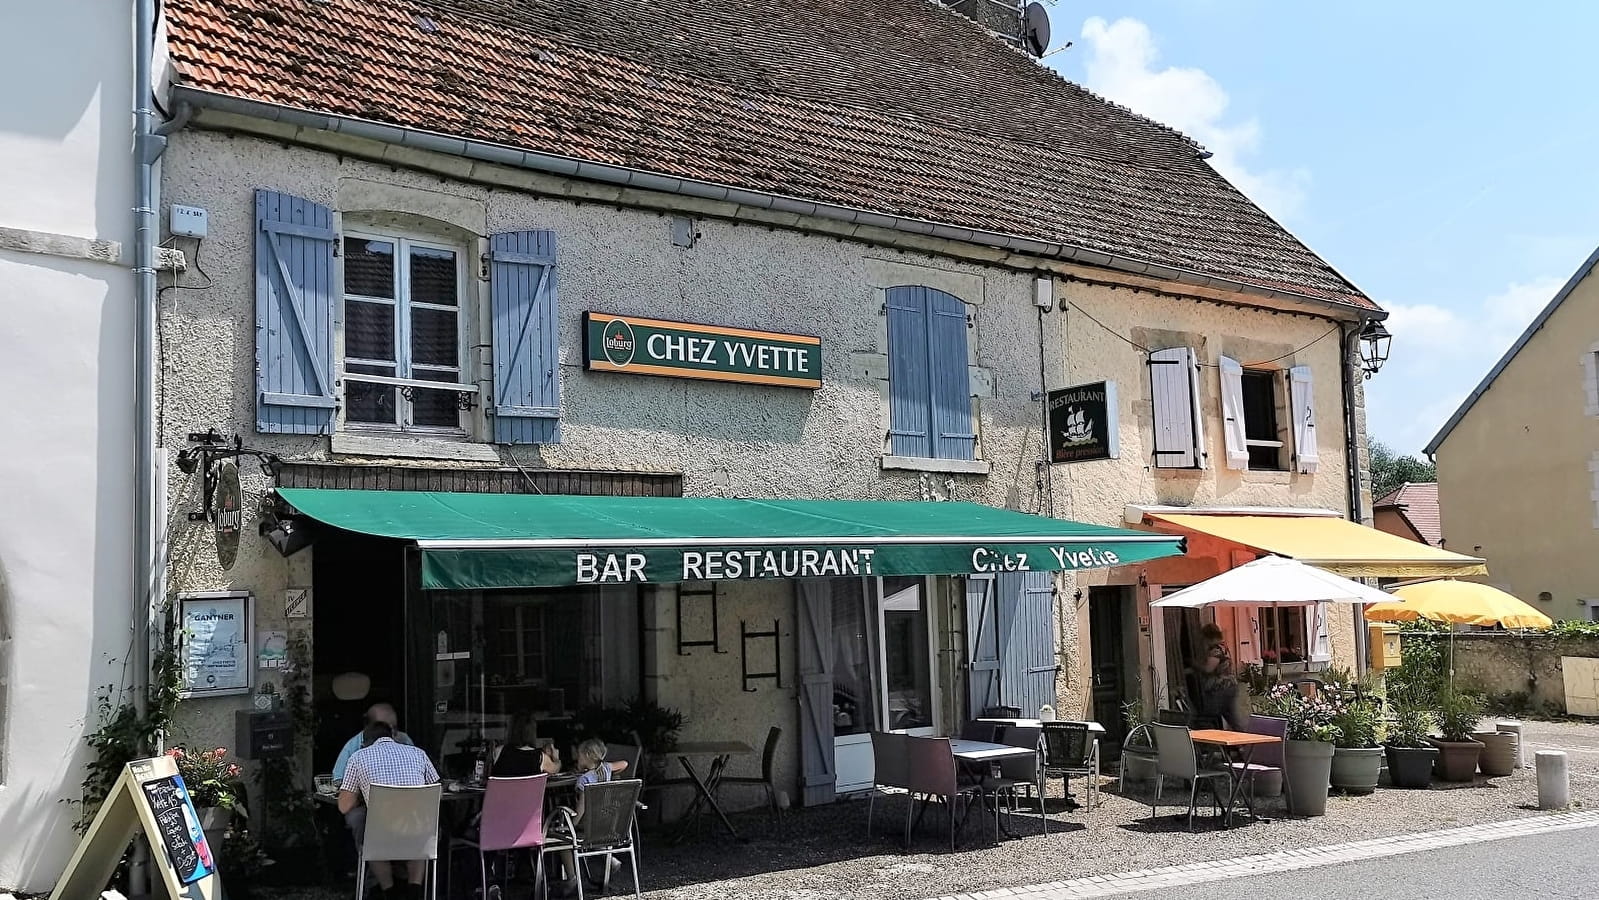 Bar restaurant Chez Yvette